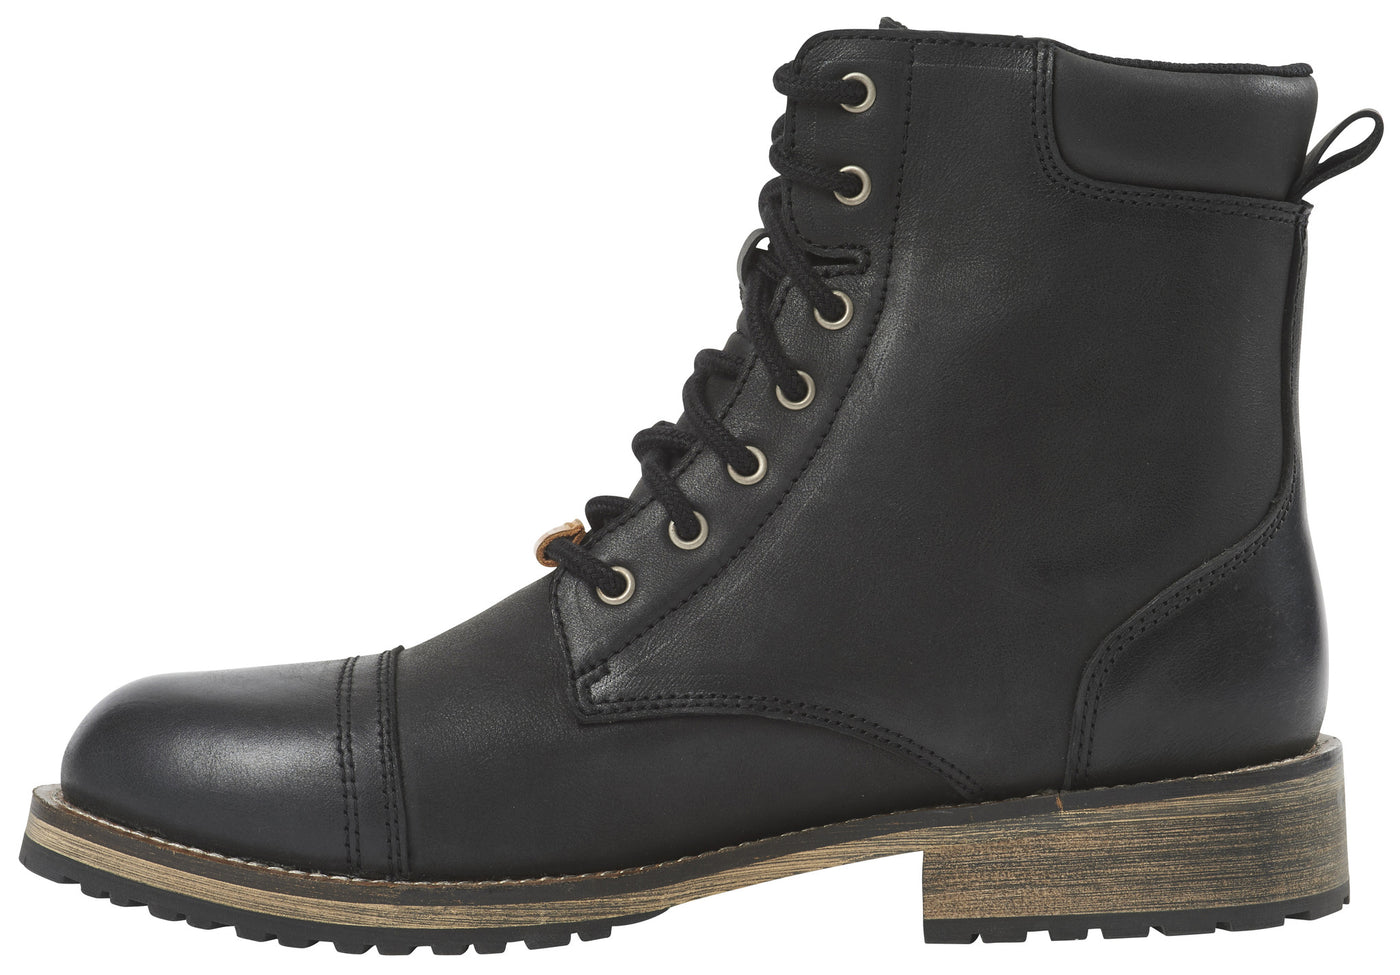 Furygan Caprino D3O Boots - Black